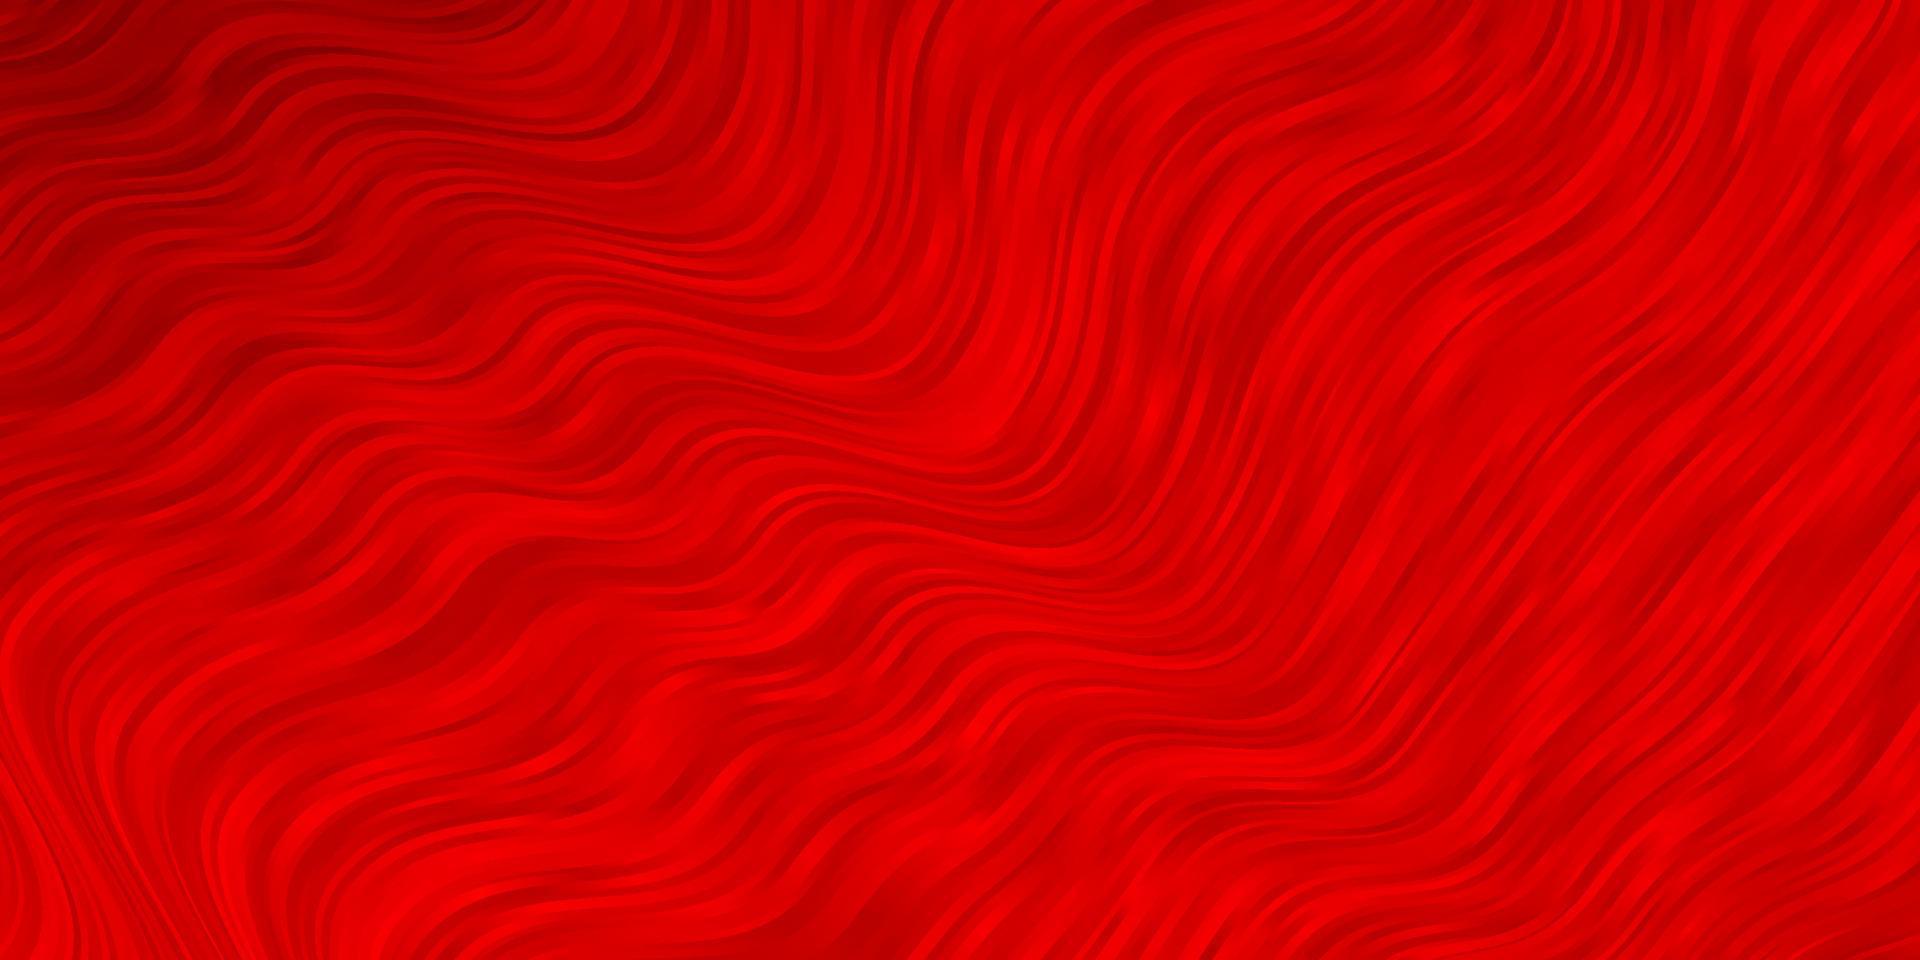 fundo vector vermelho claro com curvas.